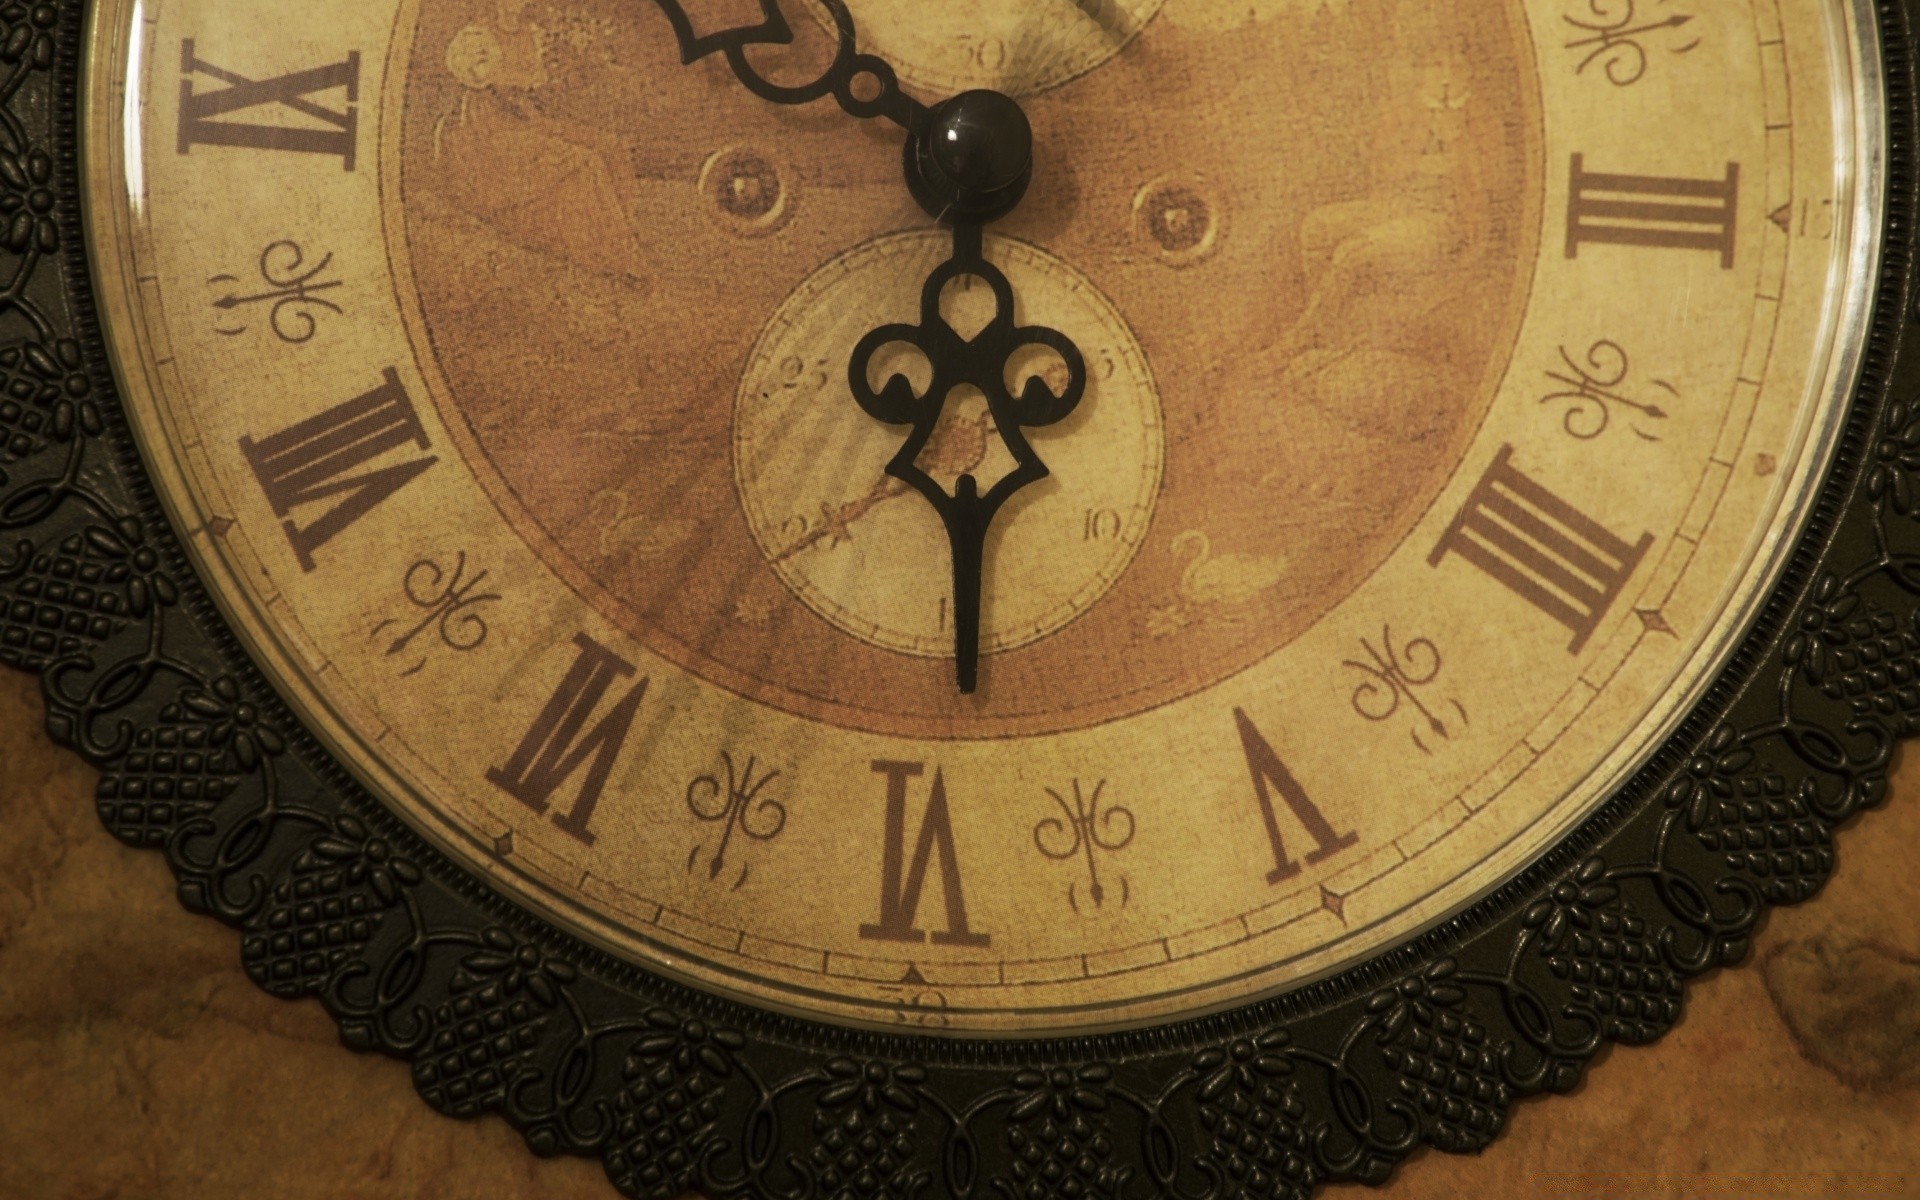 винтаж часы время смотреть минуту античная циферблат срок старый часы количество обратный отсчет полночь точность астрология ретро рабочего стола карман механизм